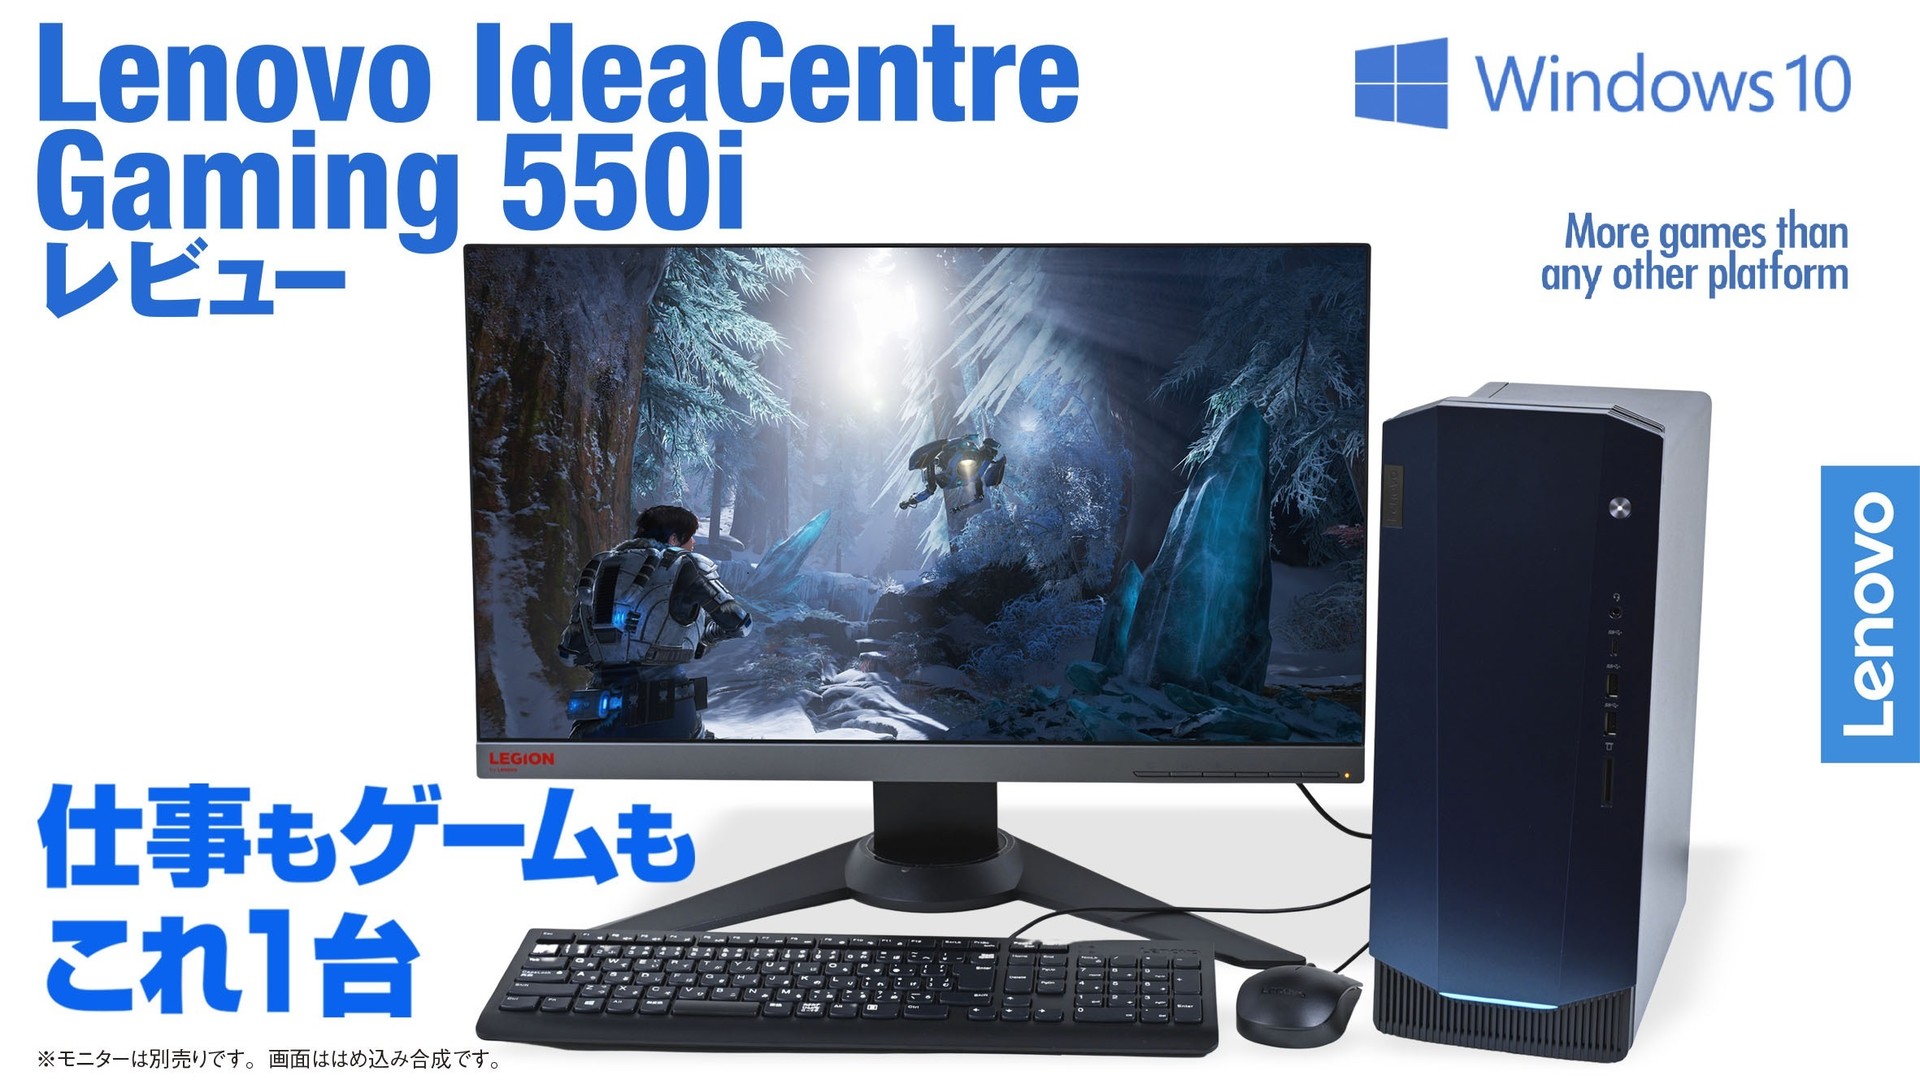 Lenovo Ideacentre Gaming 550i レビュー 多彩な用途を意識したlenovo Ideacentreにゲーミングモデルが登場 ファミ通 Com